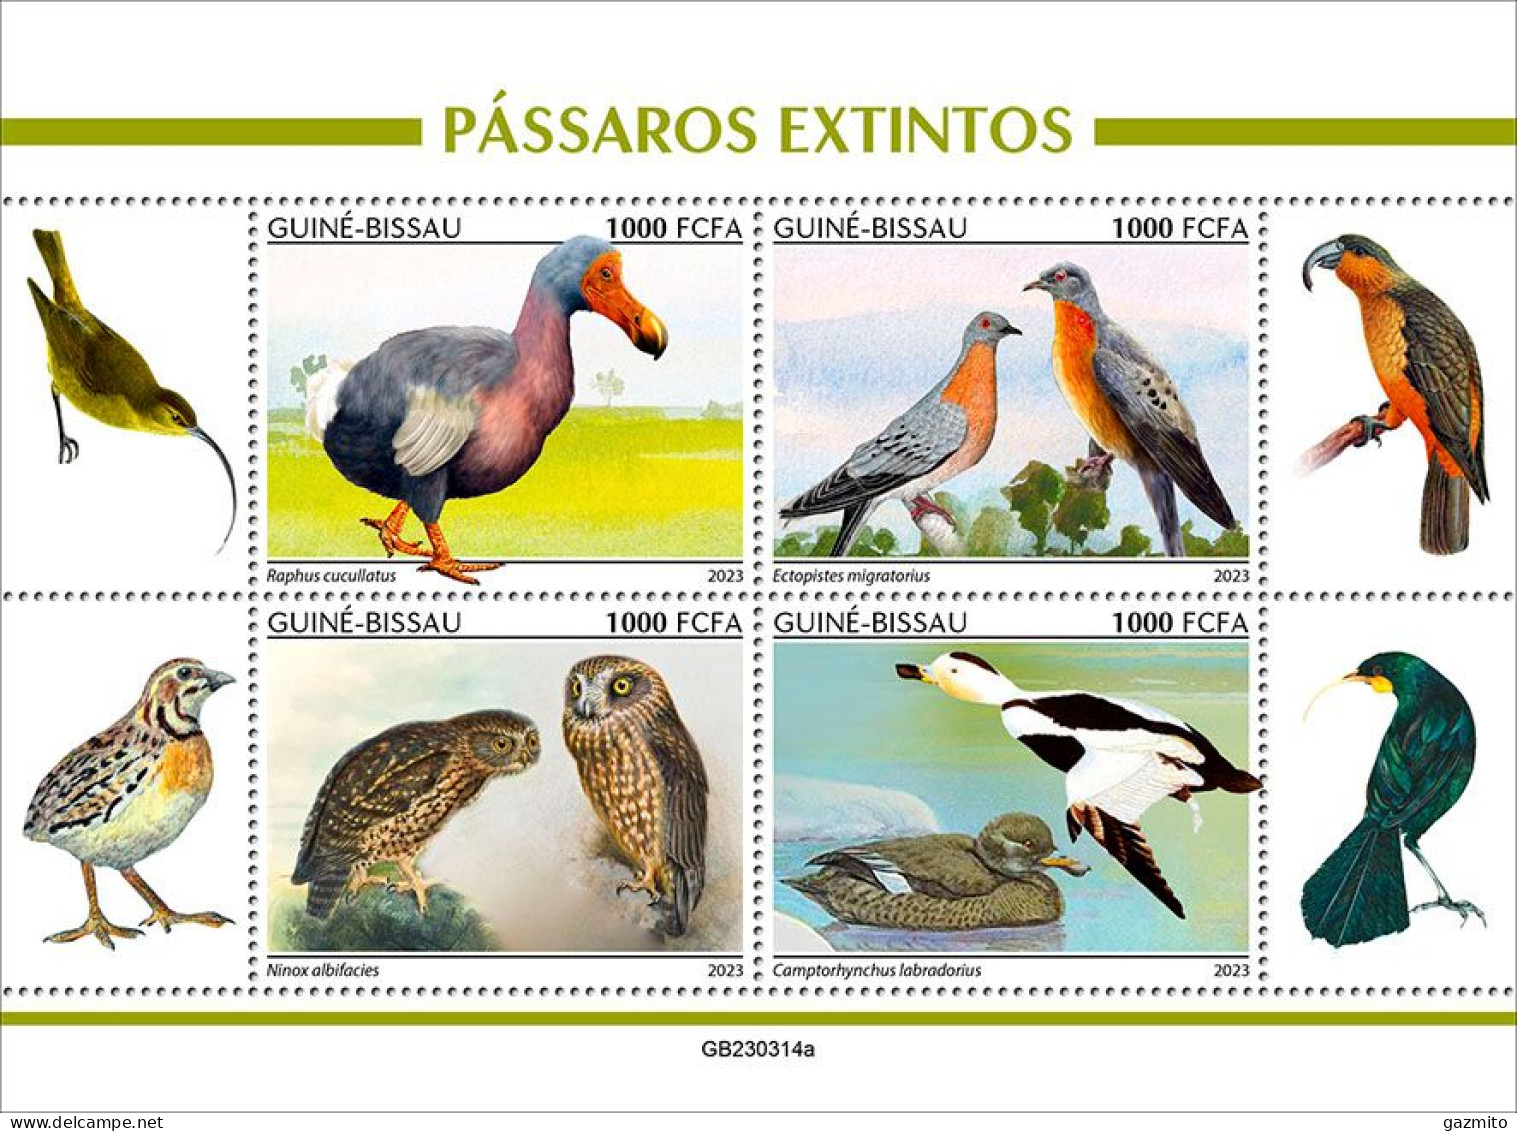 Guinea Bissau 2023, Animals, Extinct Birds, Owls, Dodo, Pigeon, Ducks, 4val In BF - Tauben & Flughühner